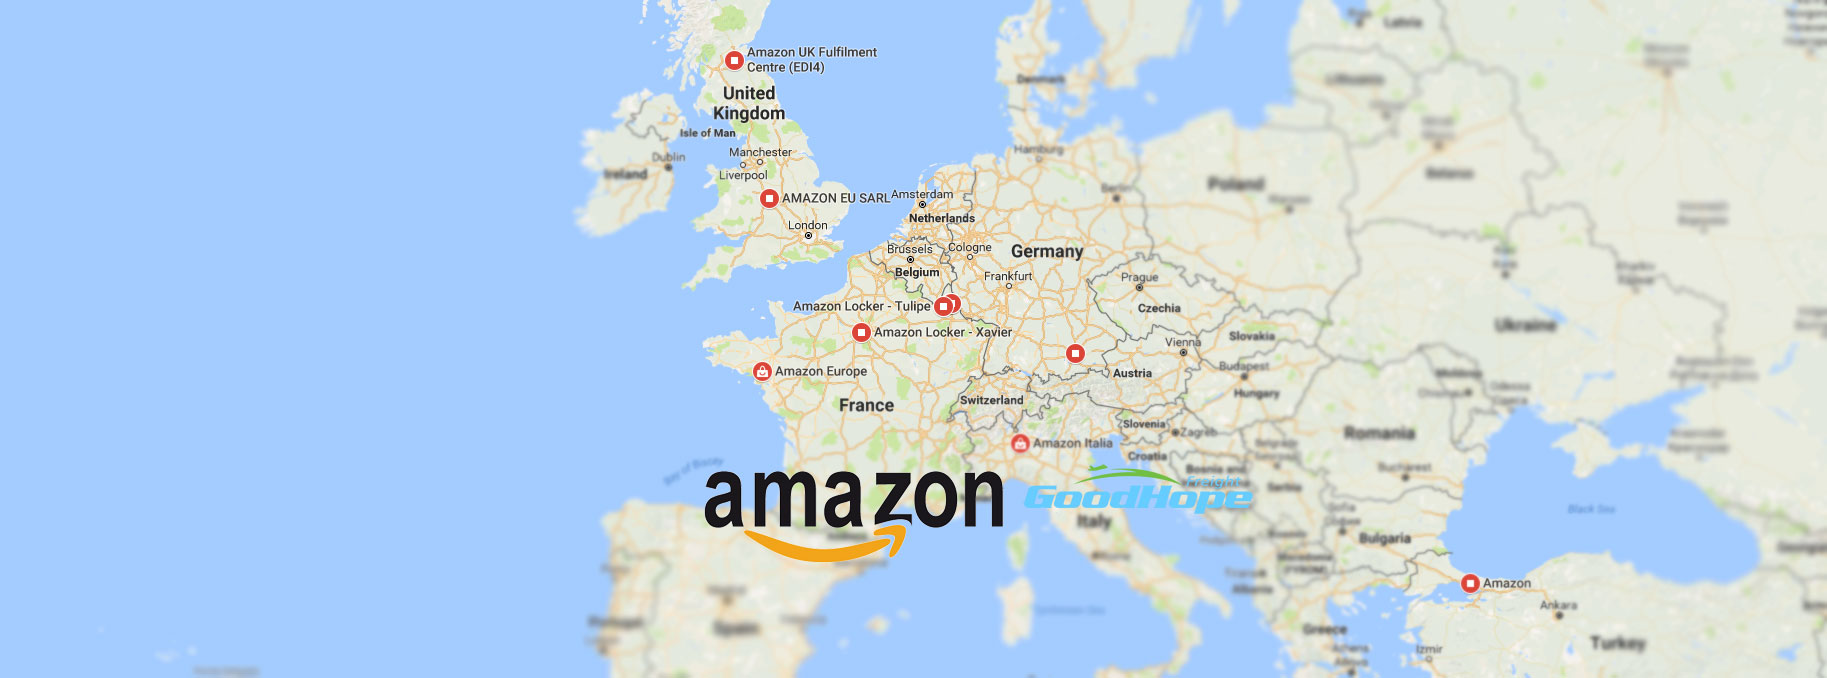 Amazon FBA uk germany france spain italy Warehouse Address